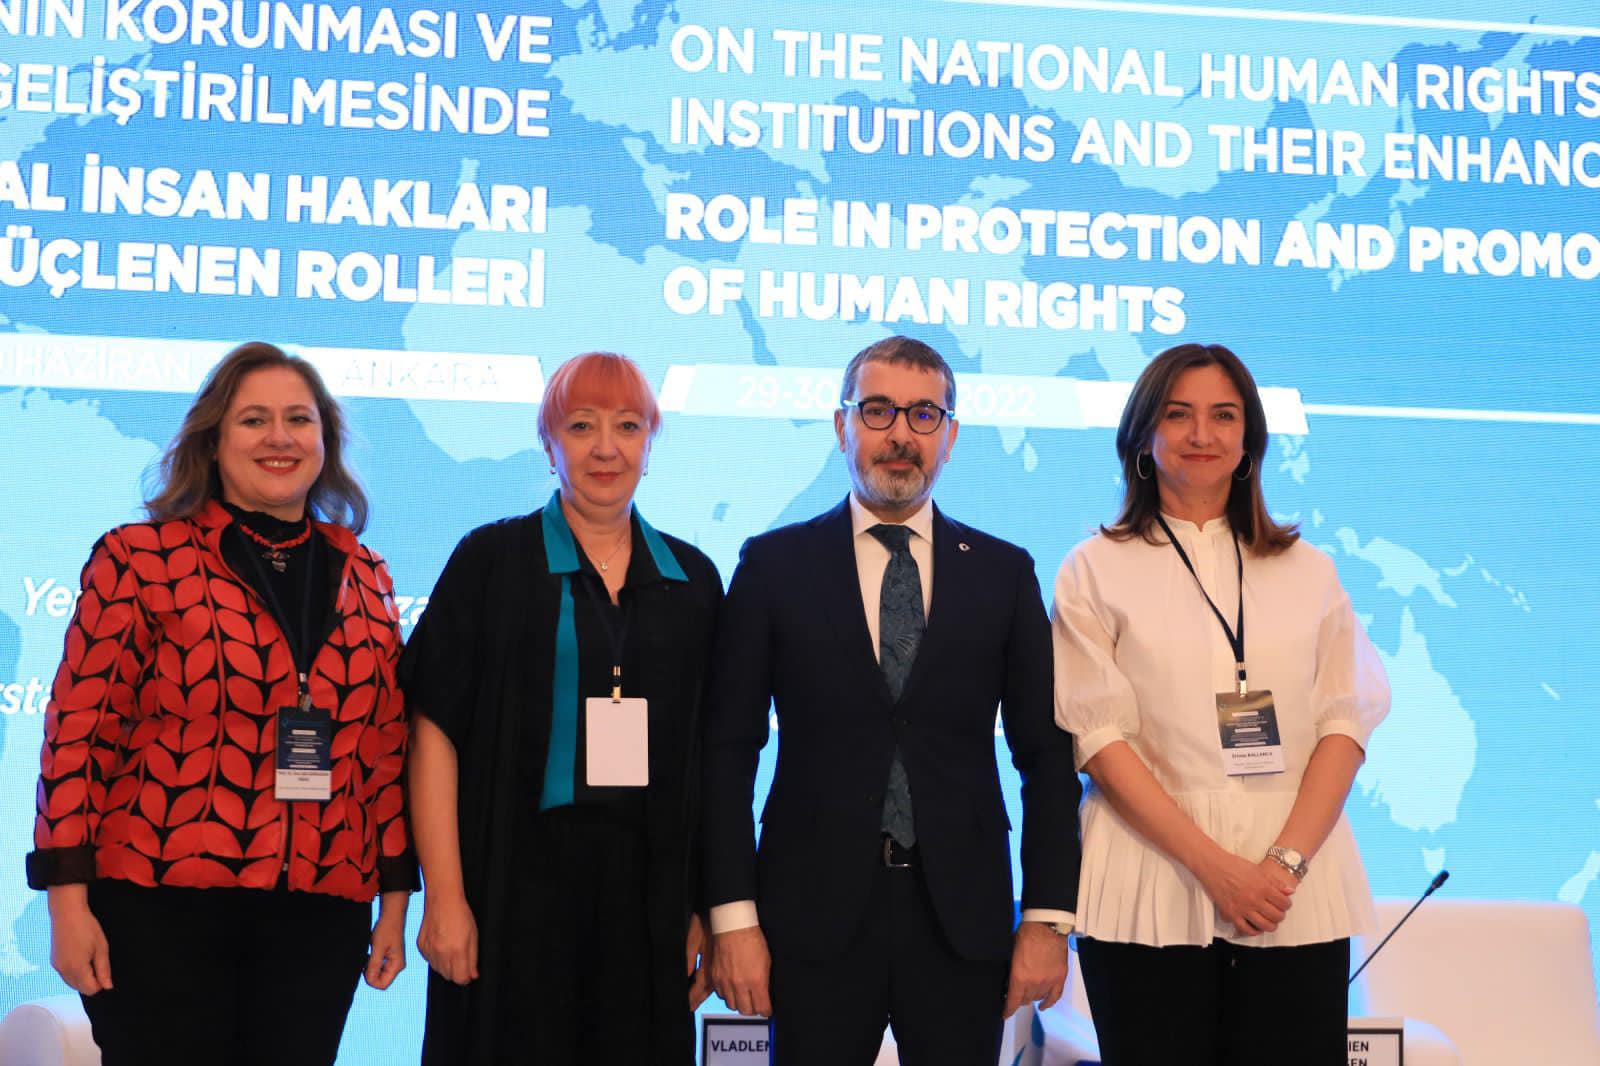 U zhvillua në Ankara të Turqisë, Samiti i Institucioneve Kombëtare të të Drejtave të njeriut nga data 29-30 qershor 2022.